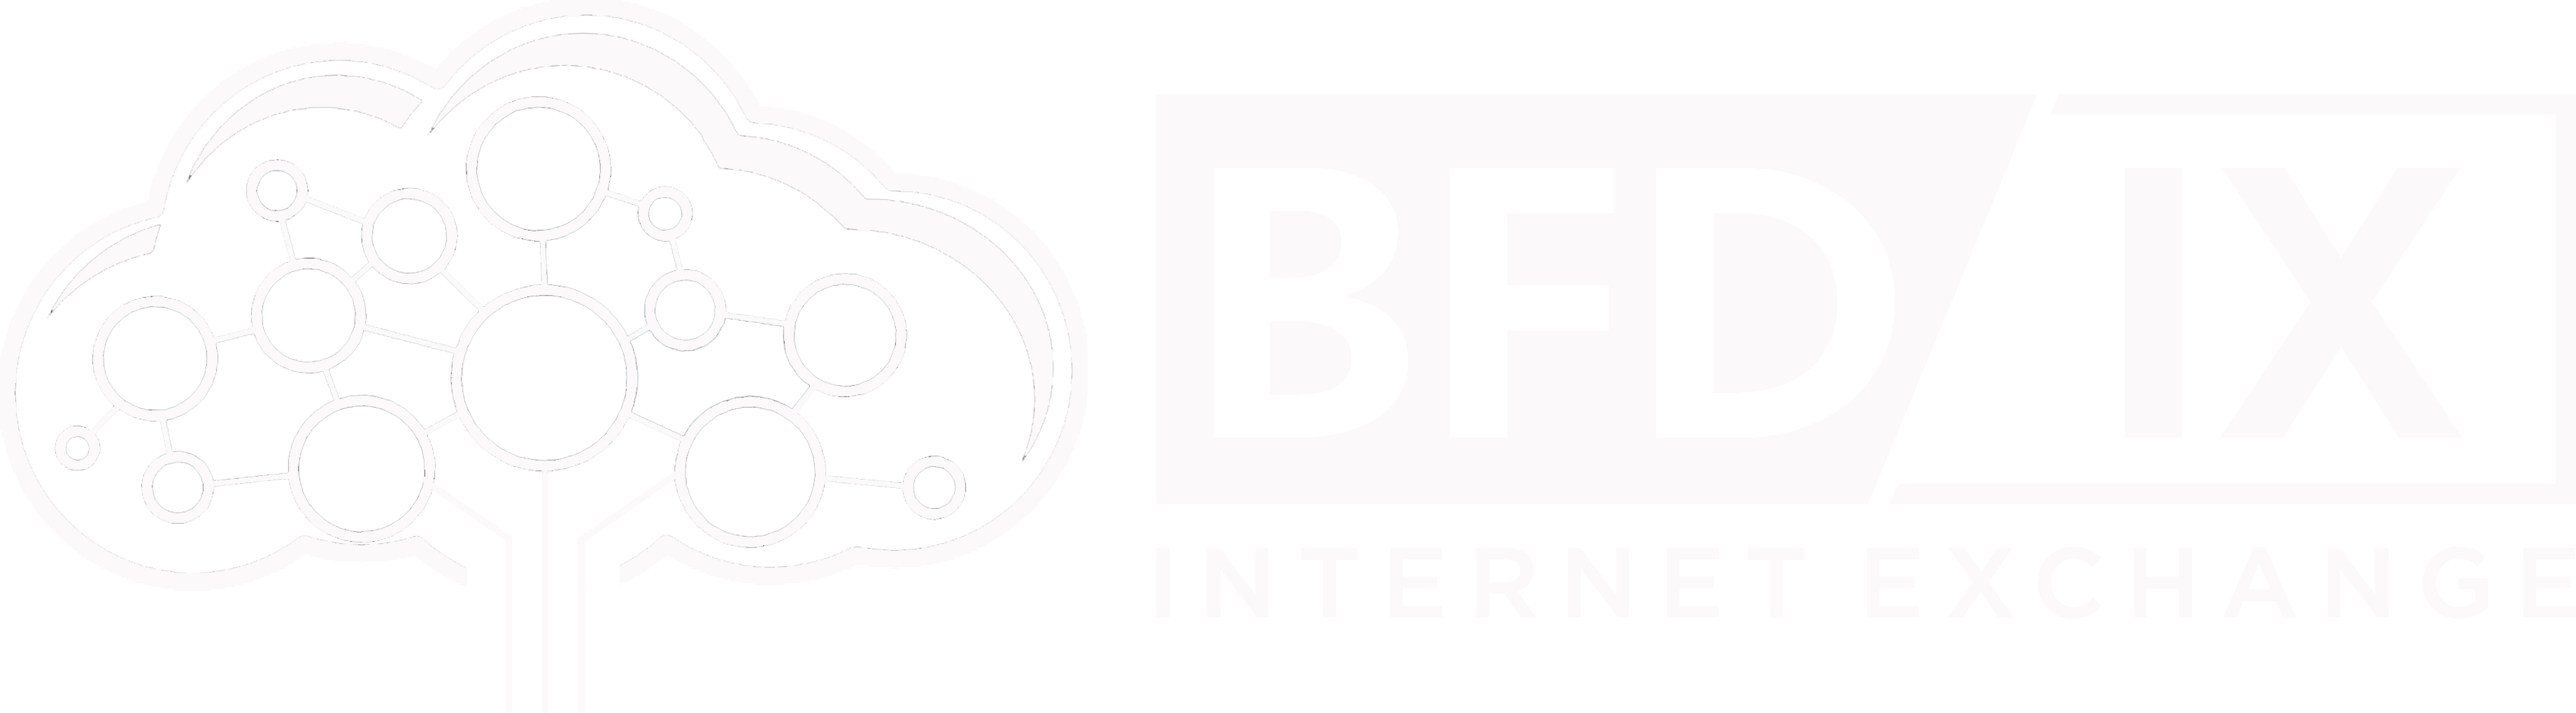 BFD-IX